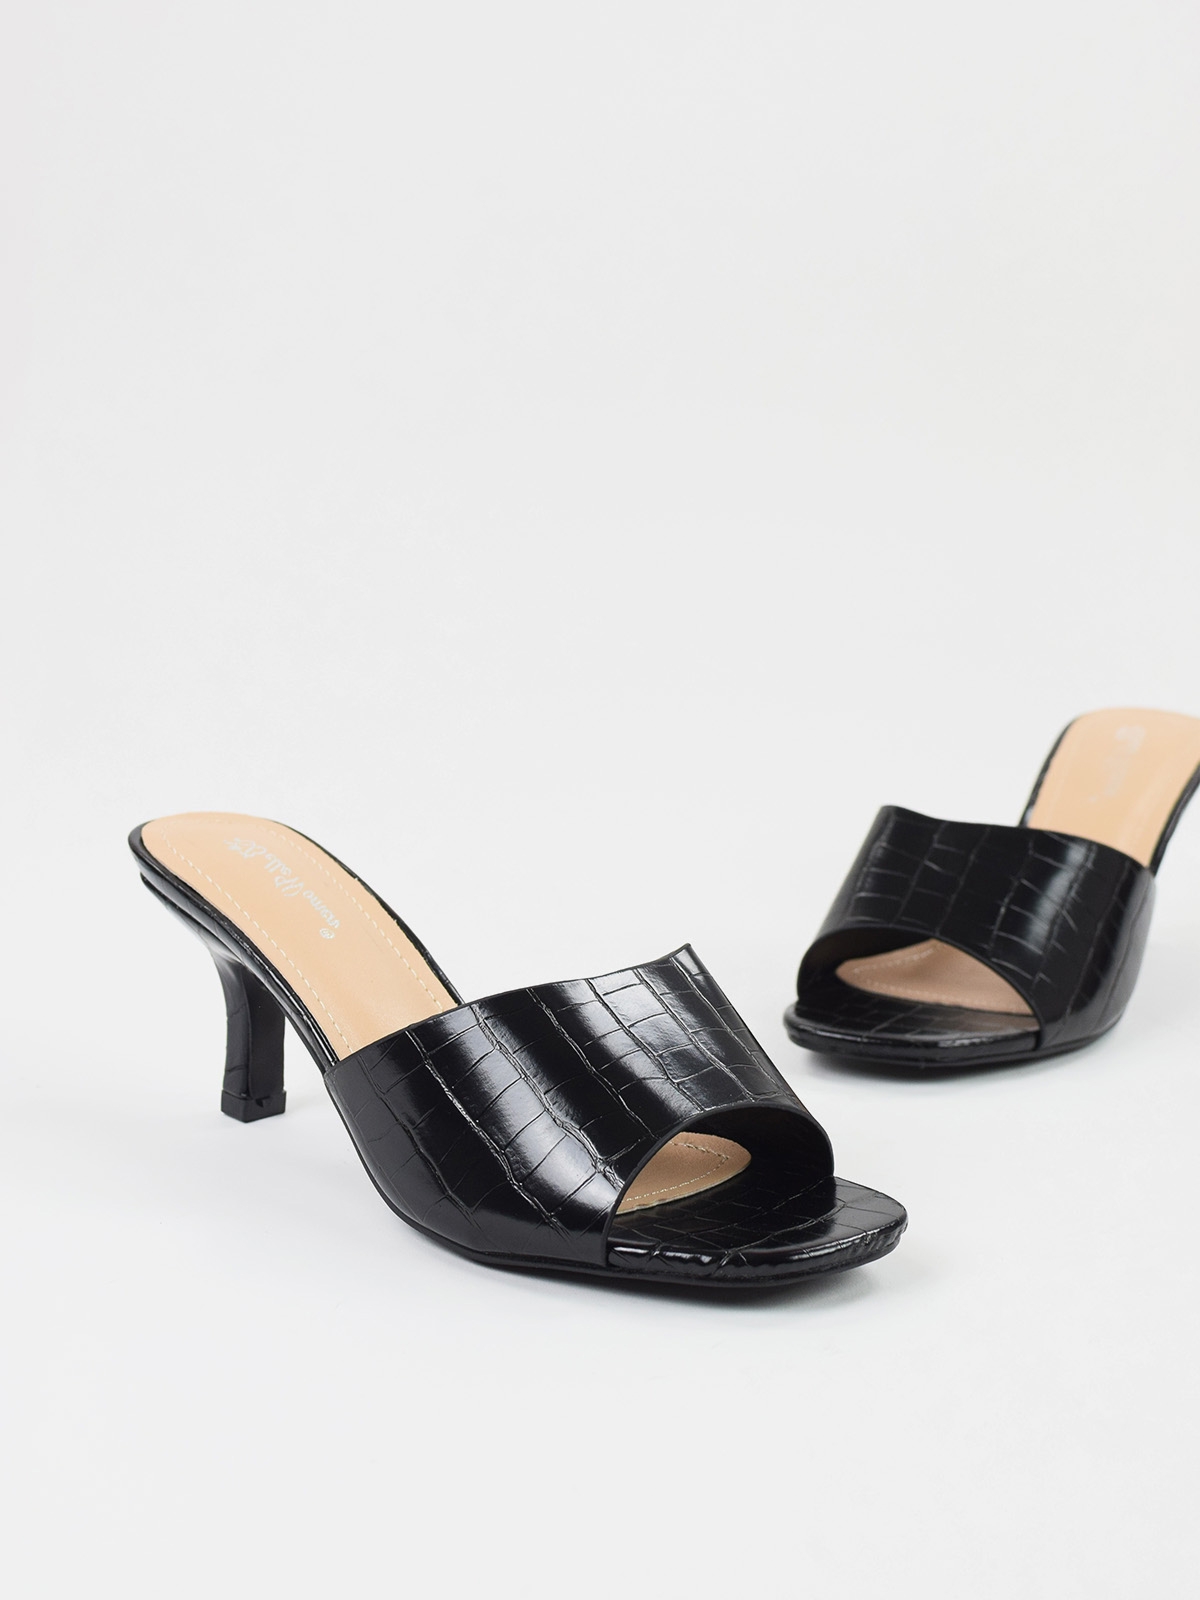 Mid heeled mule sandals in black